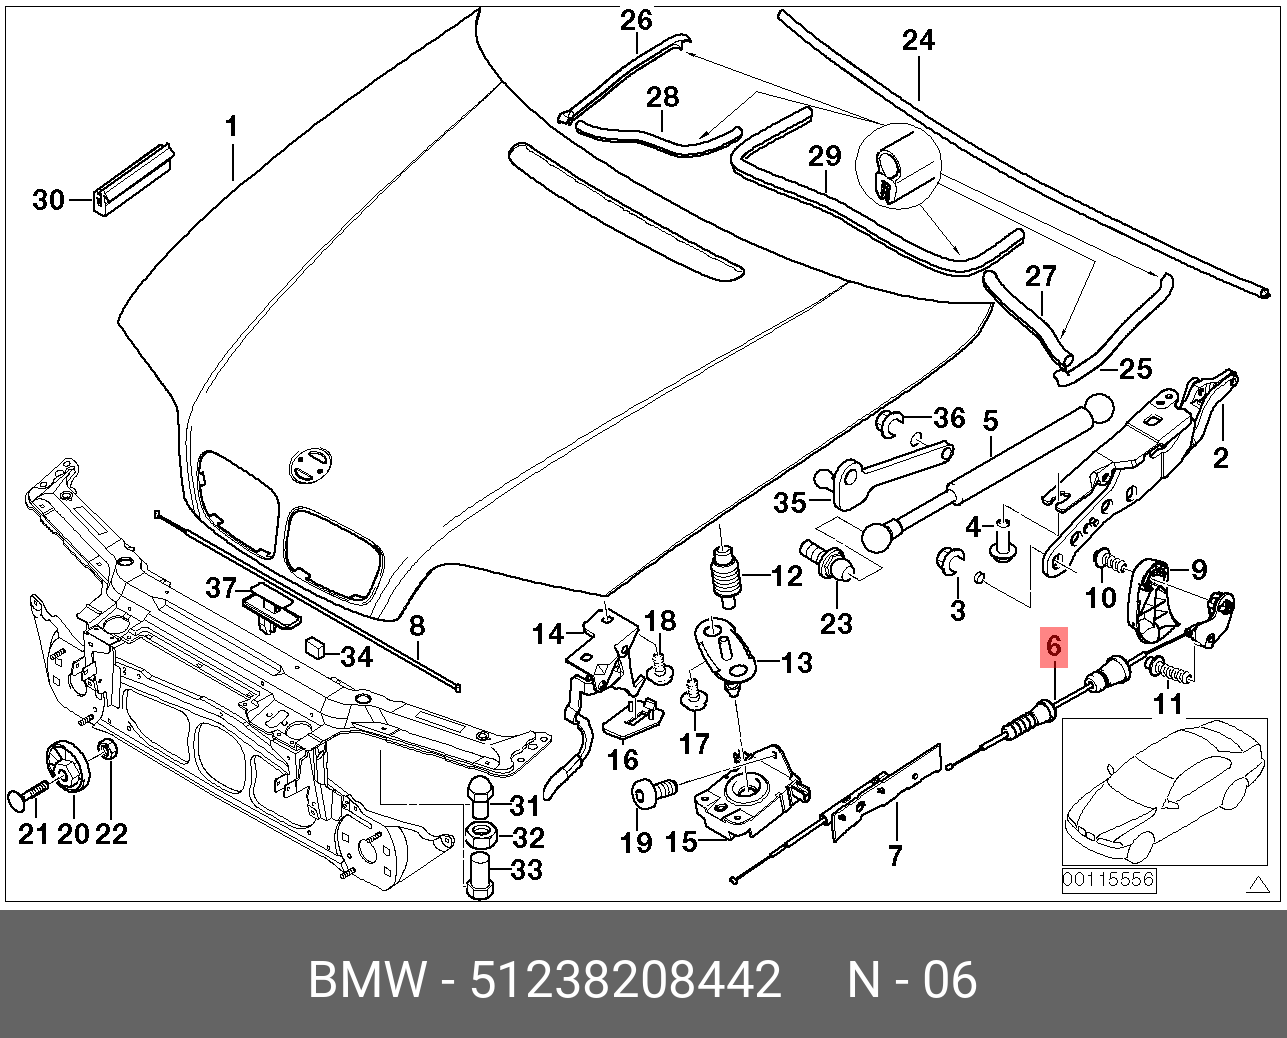 Е46 запчасти. BMW x6 капот тросик схема. Габариты капота БМВ е53. BMW x6 e71 капот тросик схема. Уплотнитель капота БМВ е46.